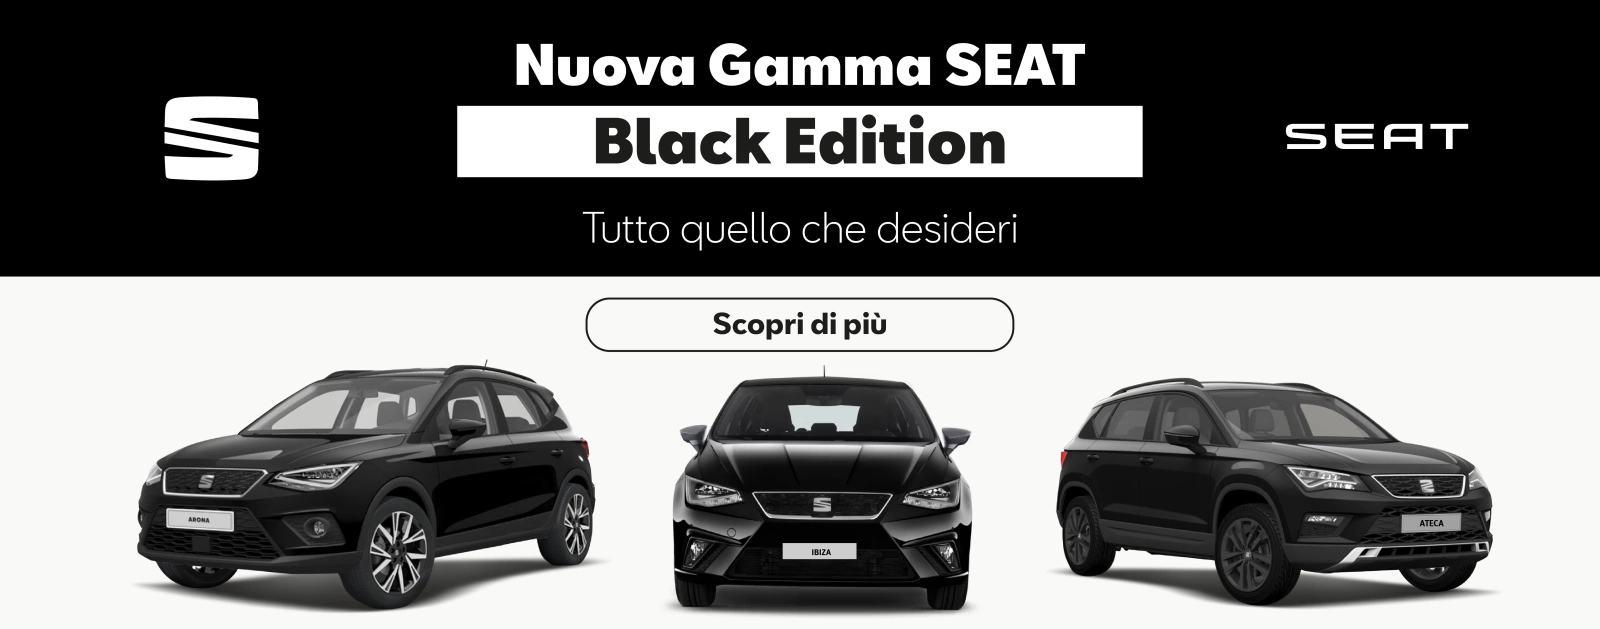 https://www.baistrocchi.it/promo/gamma-seat-black-edition?utm_source=sito&utm_medium=banner&utm_campaign=gamma_seat_black_edition